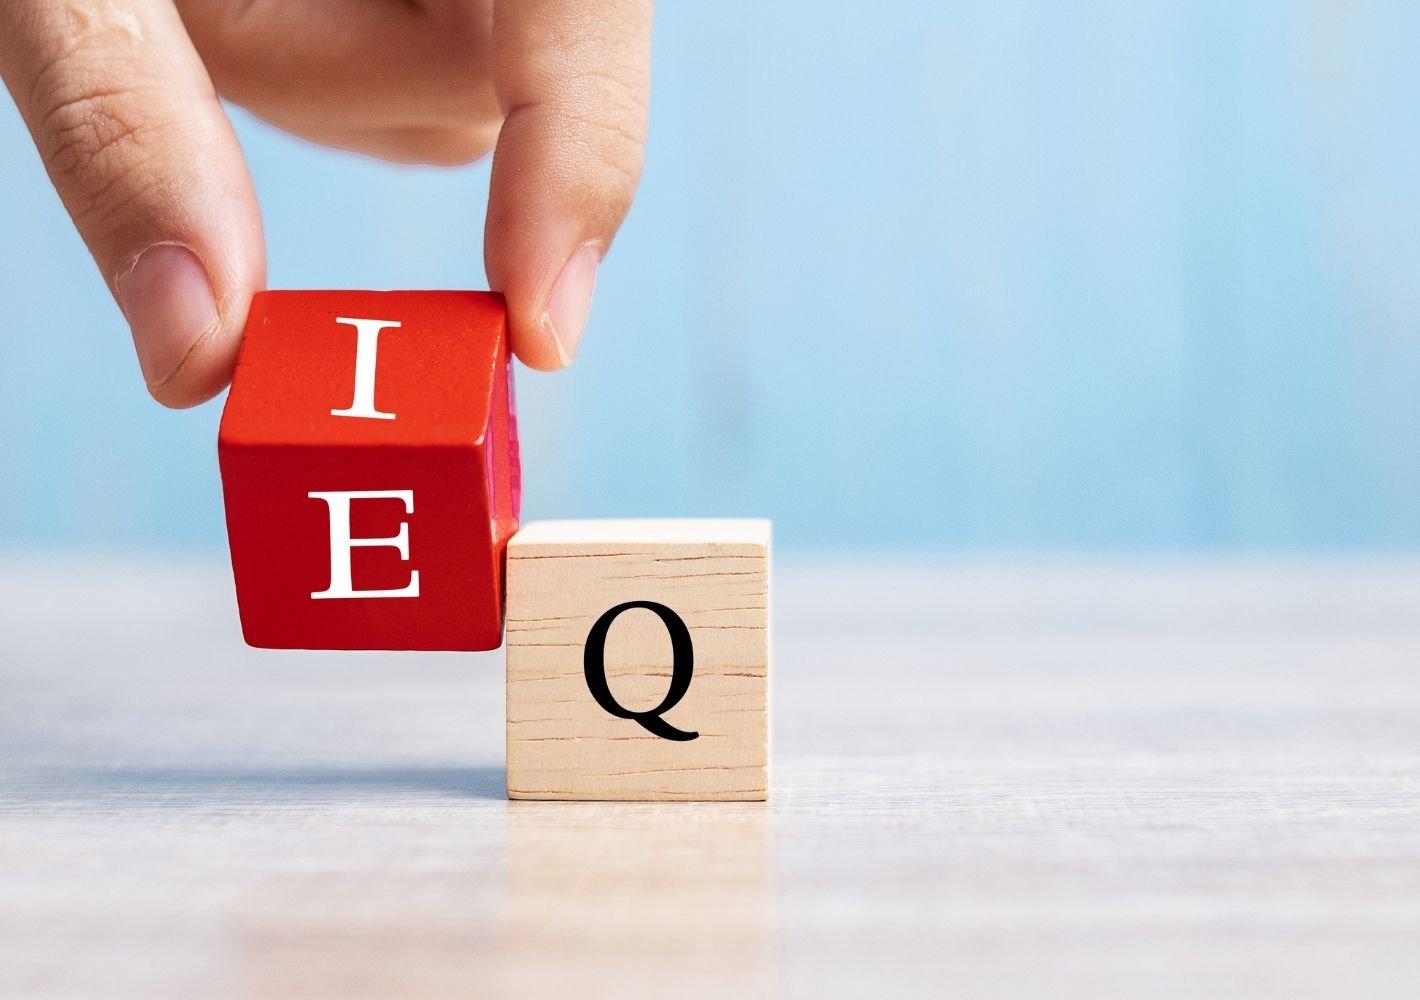 EQ vs IQ: How important is emotional intelligence?